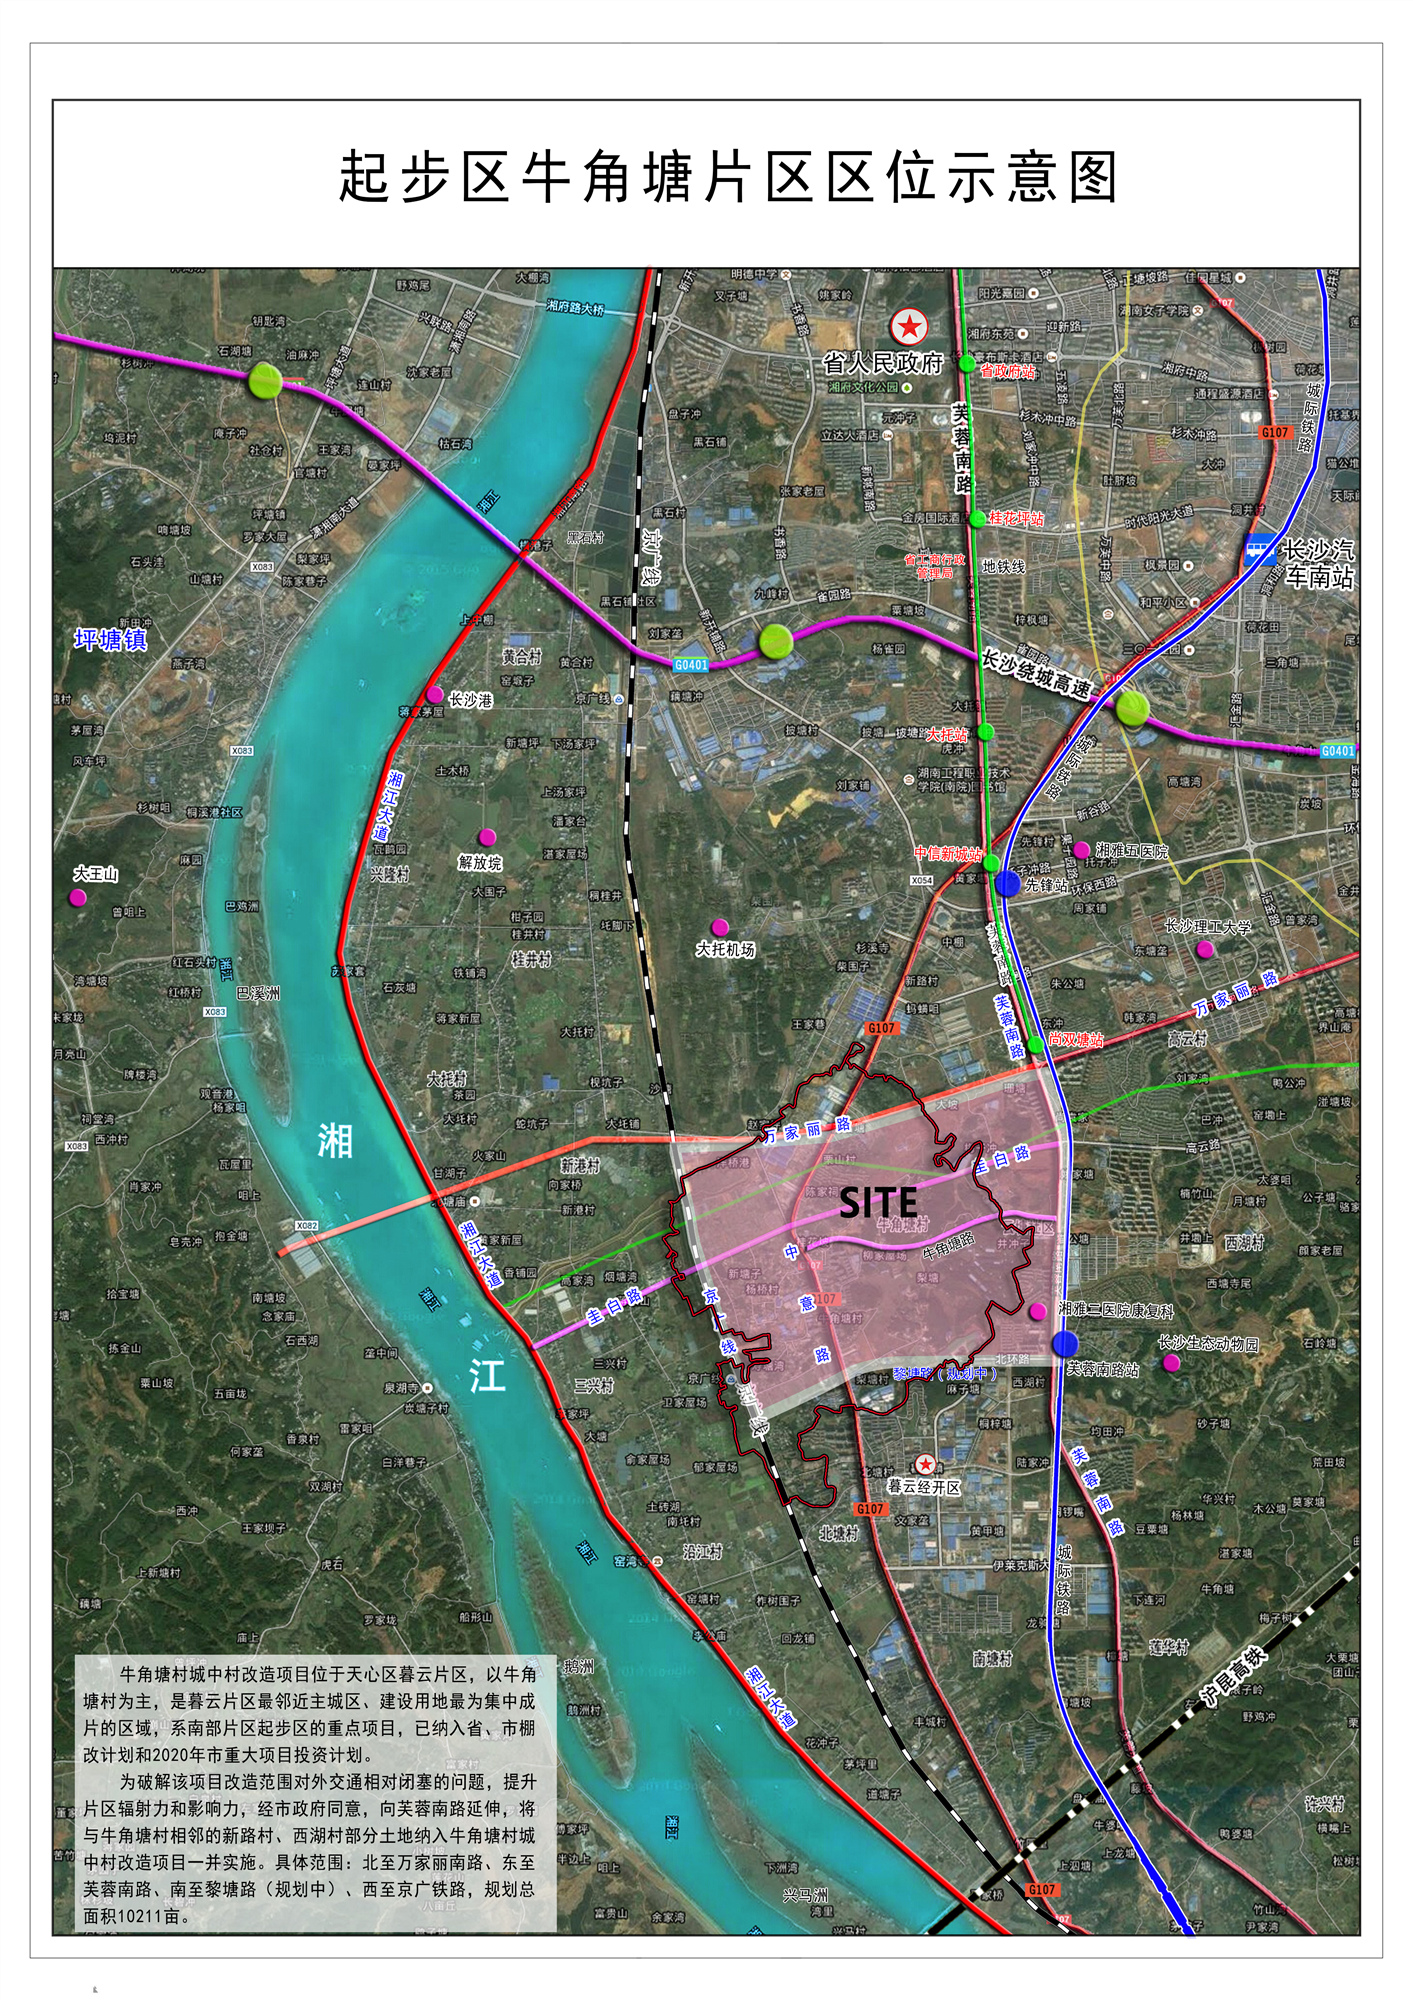 图为牛角塘片区区位示意图，粉色区域为牛角塘村城中村改造项目涉及区域。 长沙市南部融城办供图